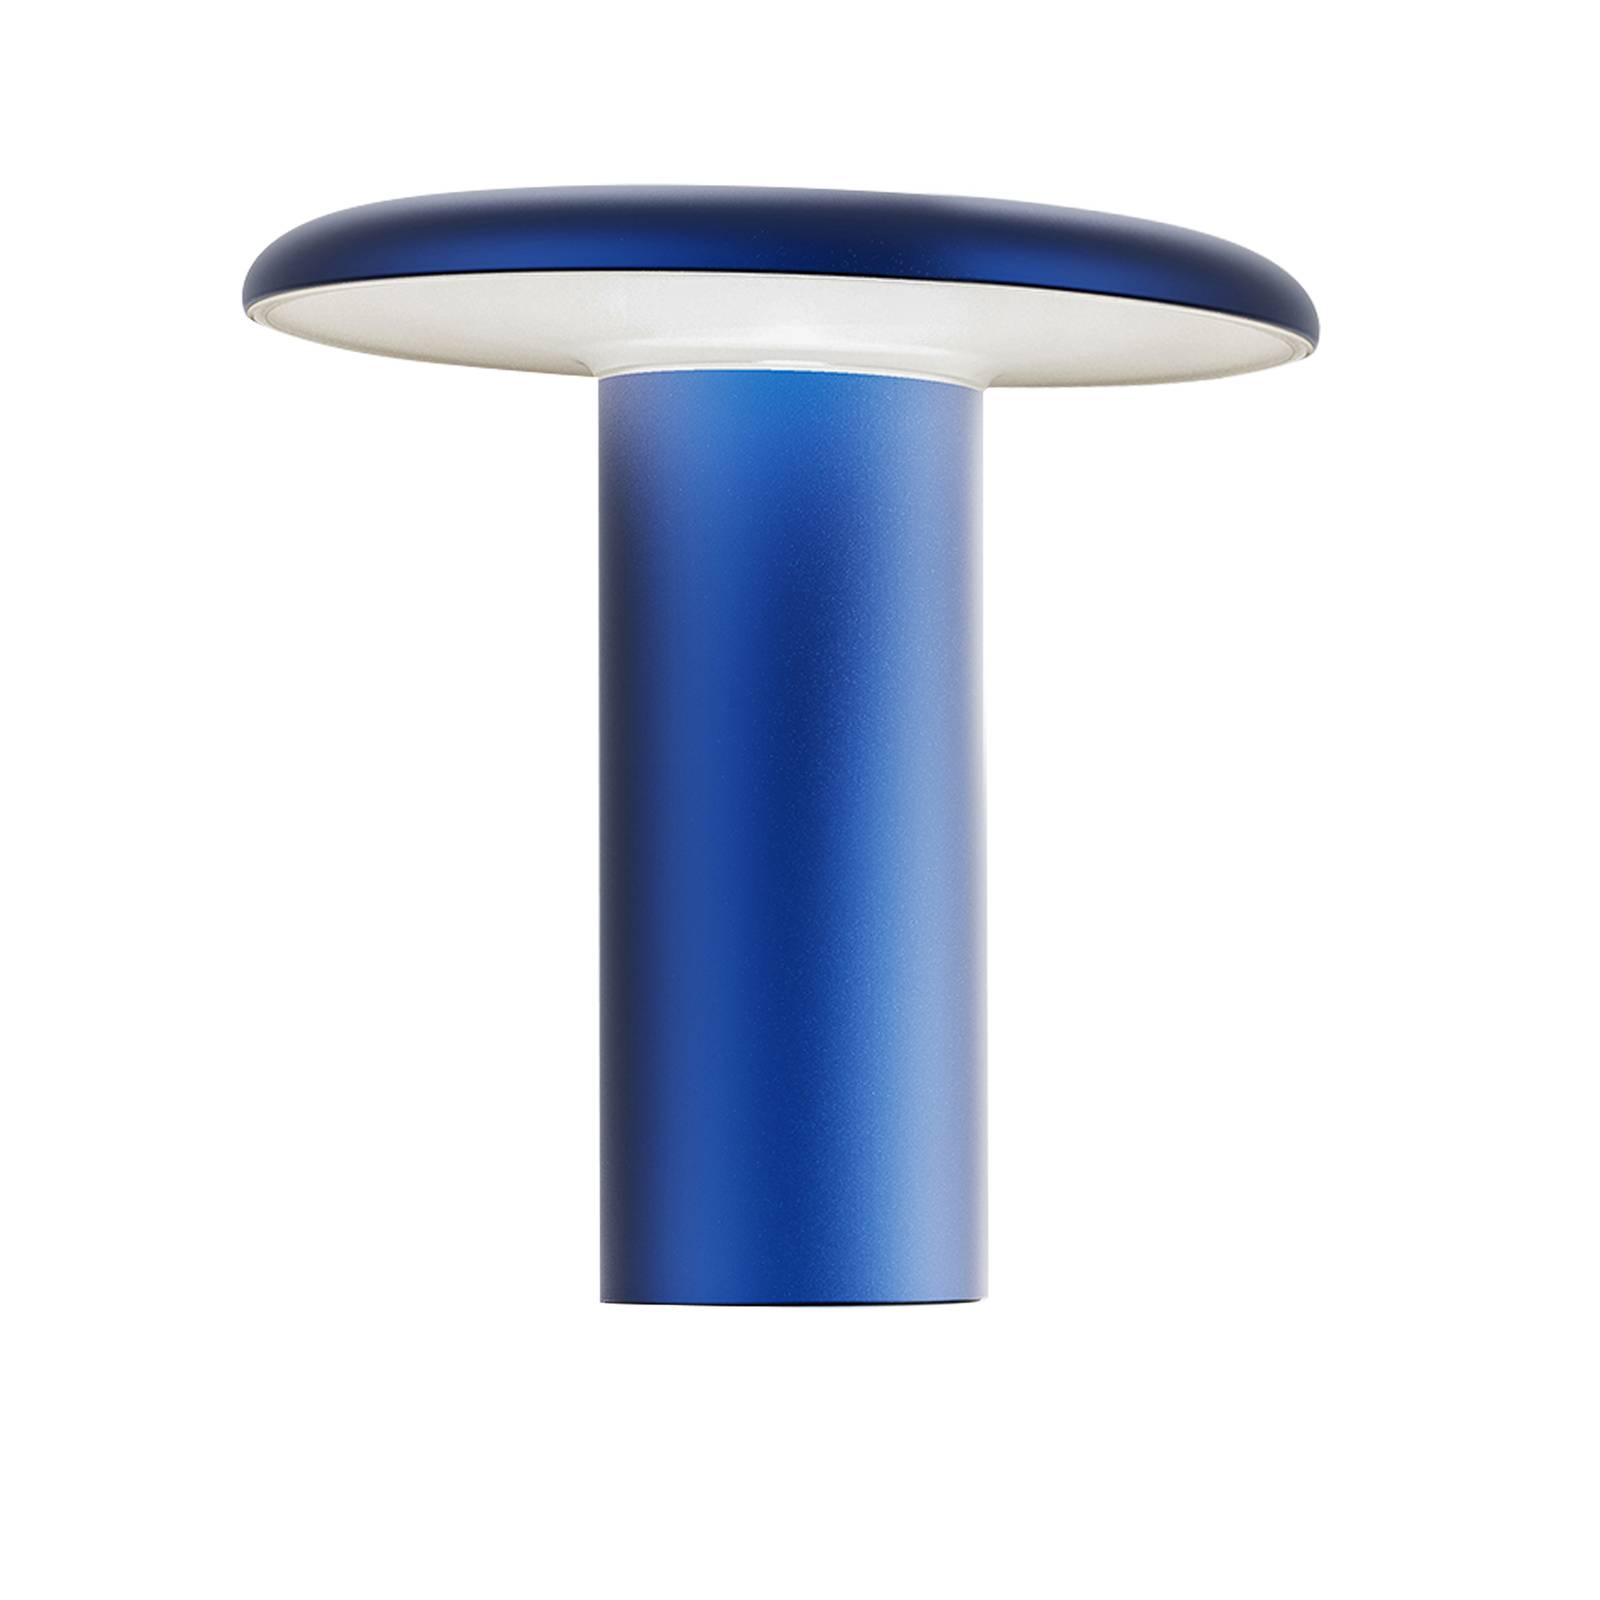 Artemide takku led asztali lámpa újratölthető akkumulátorral, kék színben